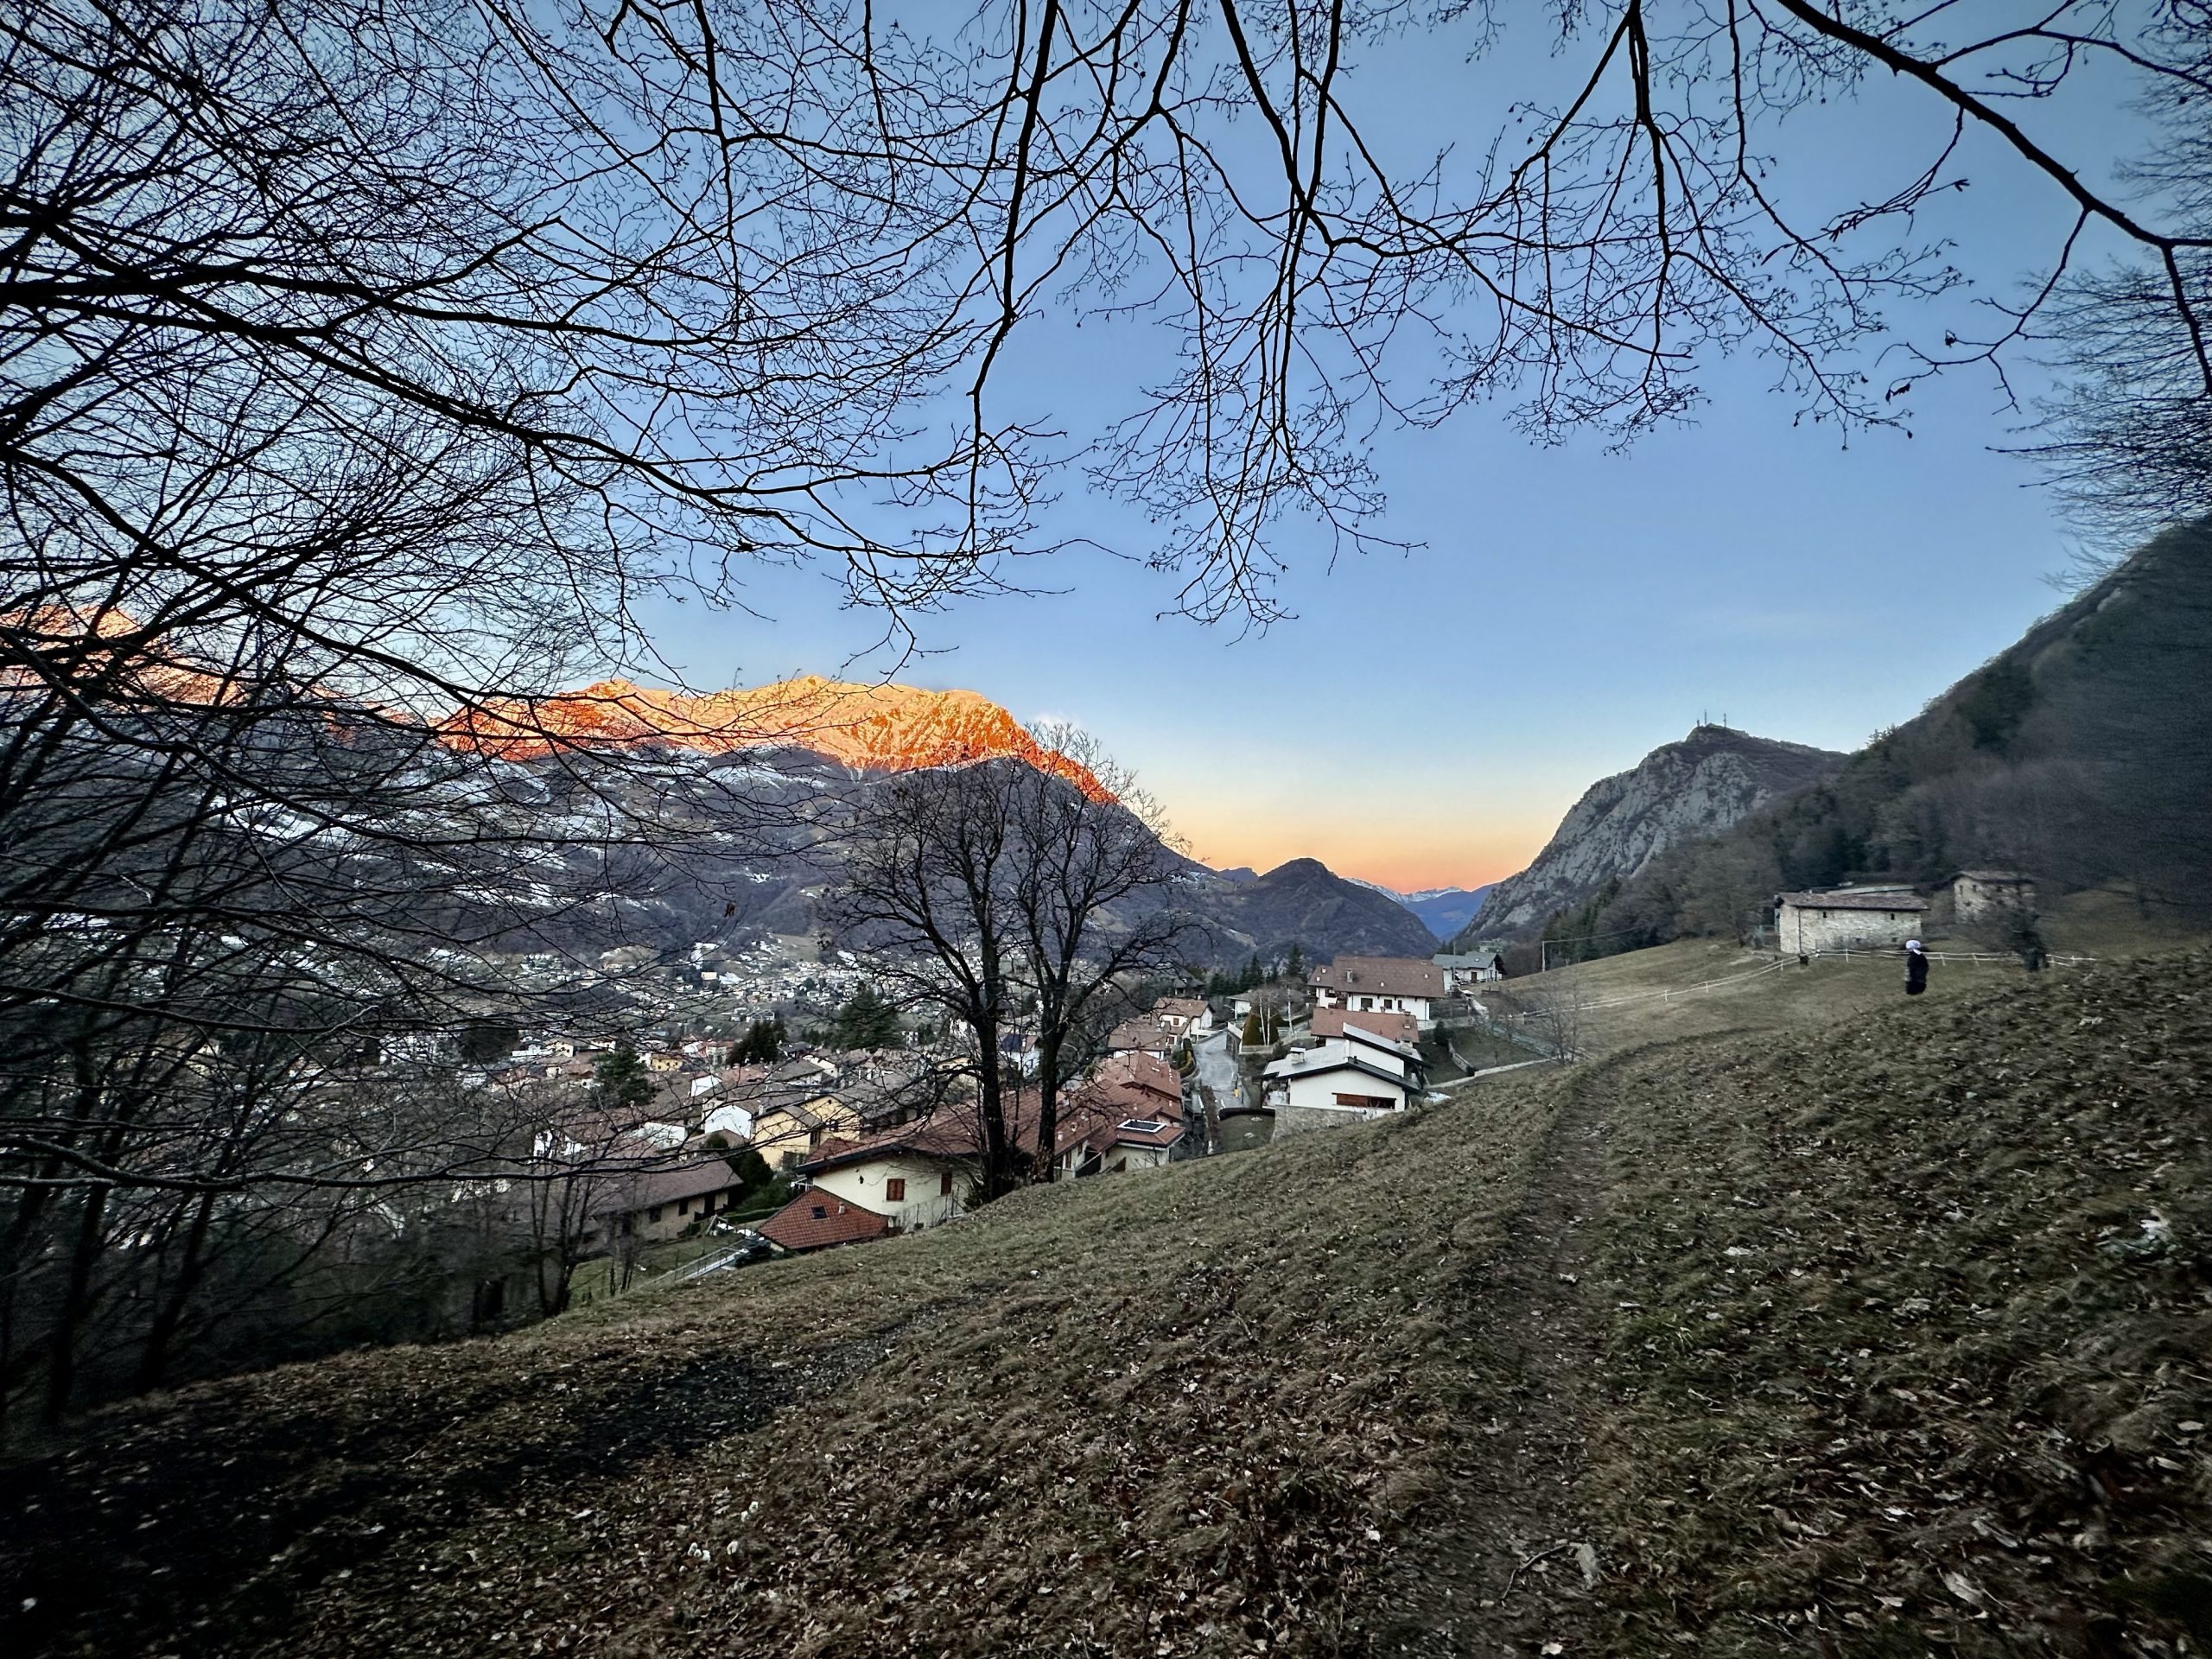 Day 33.4 – Barzio trail